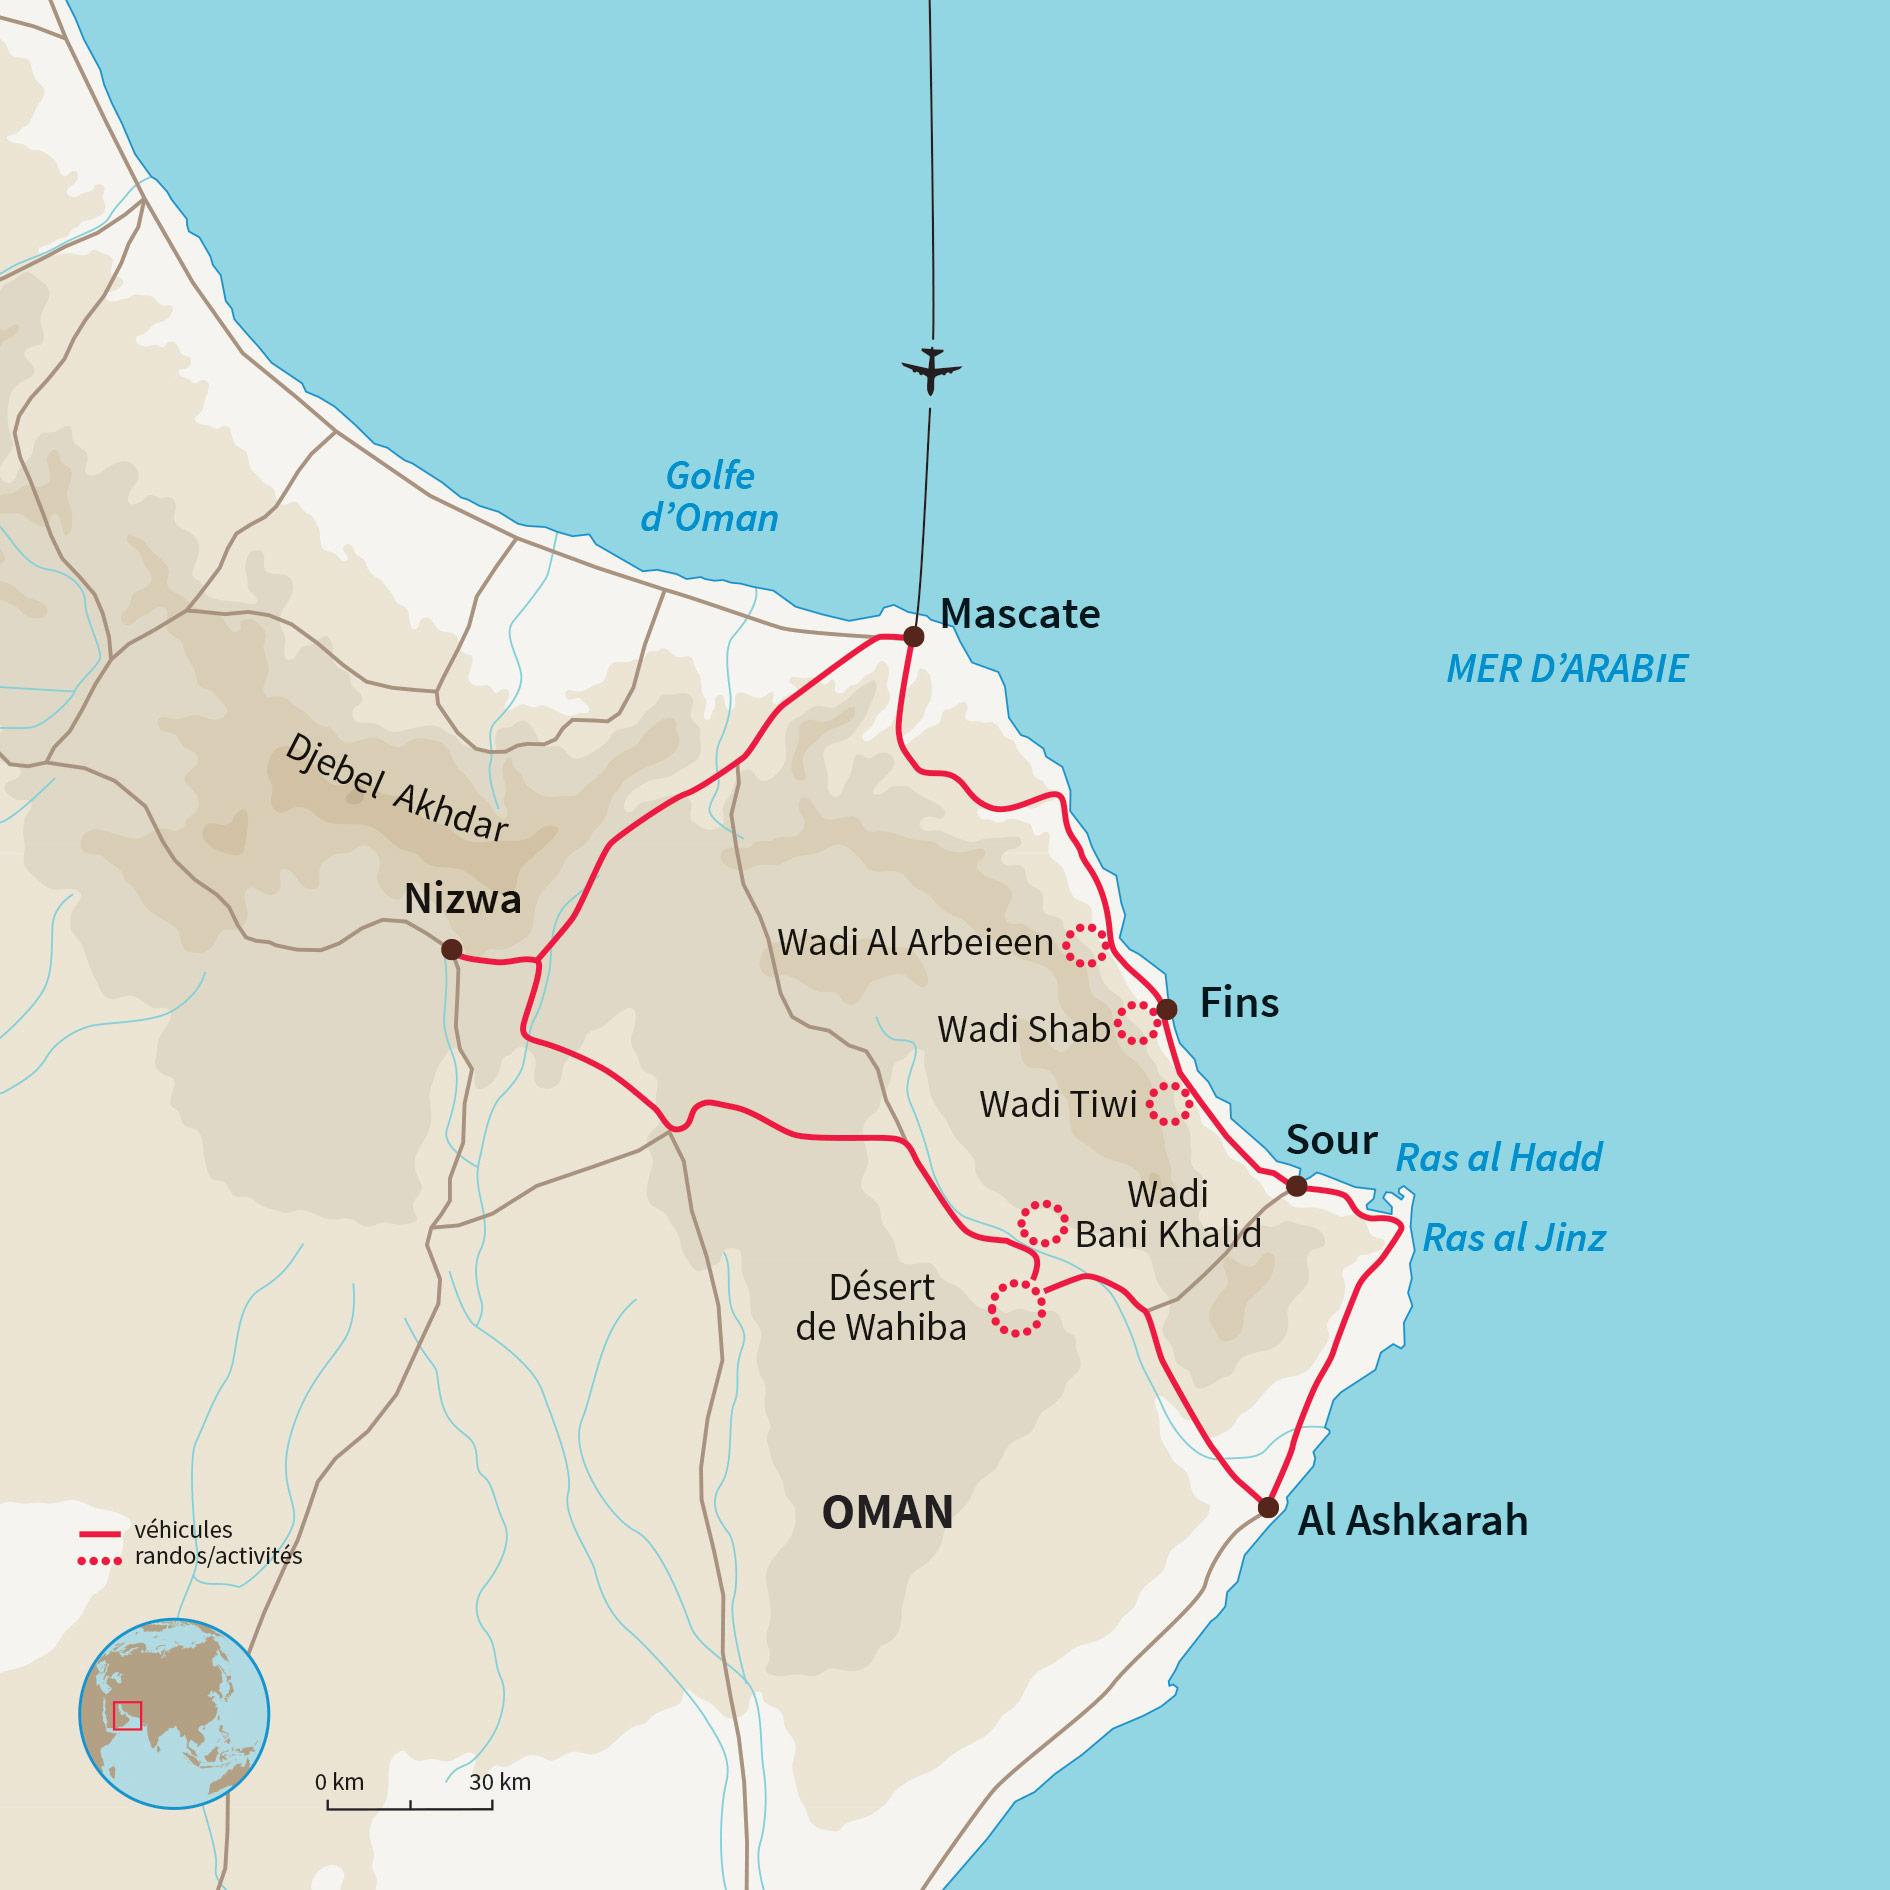 Bản đồ Oman 2024 sẽ khiến bạn liên tưởng đến khả năng phát triển kinh tế của quốc gia này. Từ những thành phố hiện đại đến những cảng biển sầm uất, Oman đang chuẩn bị để trở thành một trong những trung tâm kinh tế lớn nhất khu vực Trung Đông. Đừng bỏ lỡ cơ hội để tìm hiểu về những tiềm năng thú vị của đất nước đầy mê hoặc này.